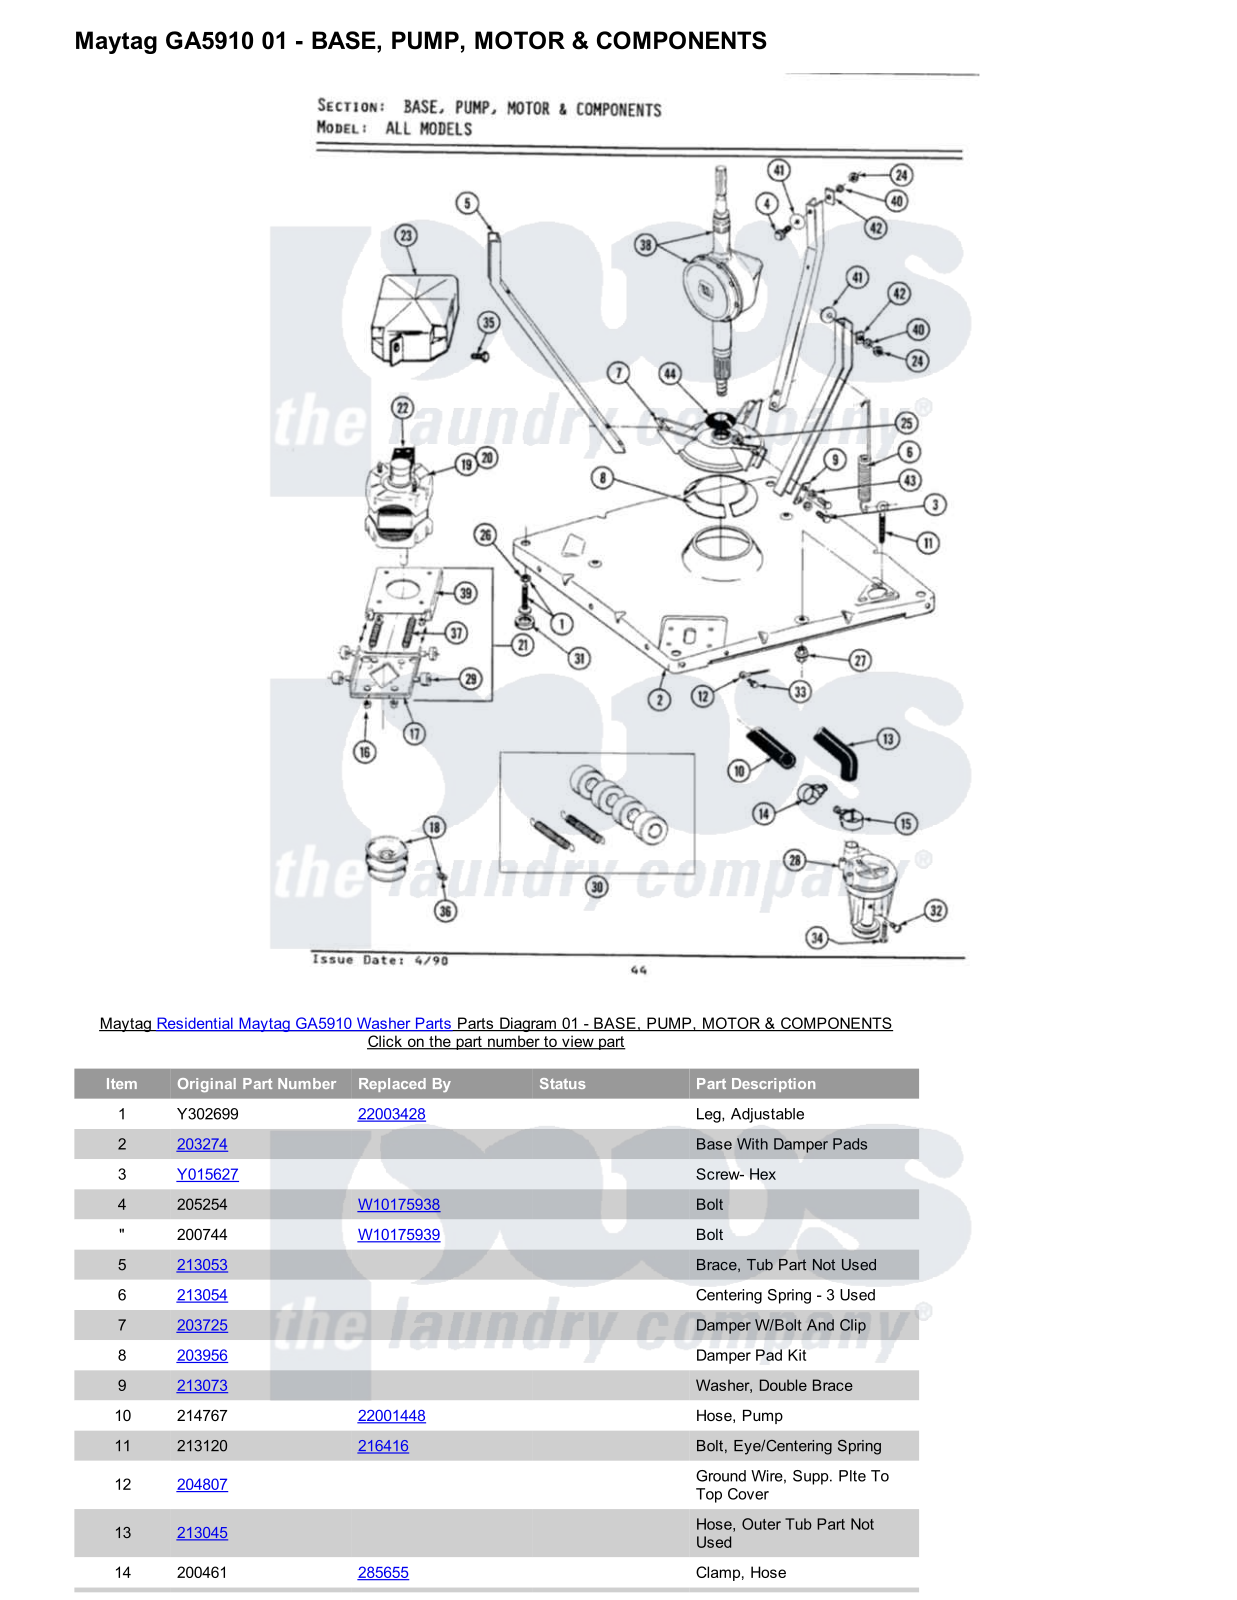 Maytag GA5910 Parts Diagram